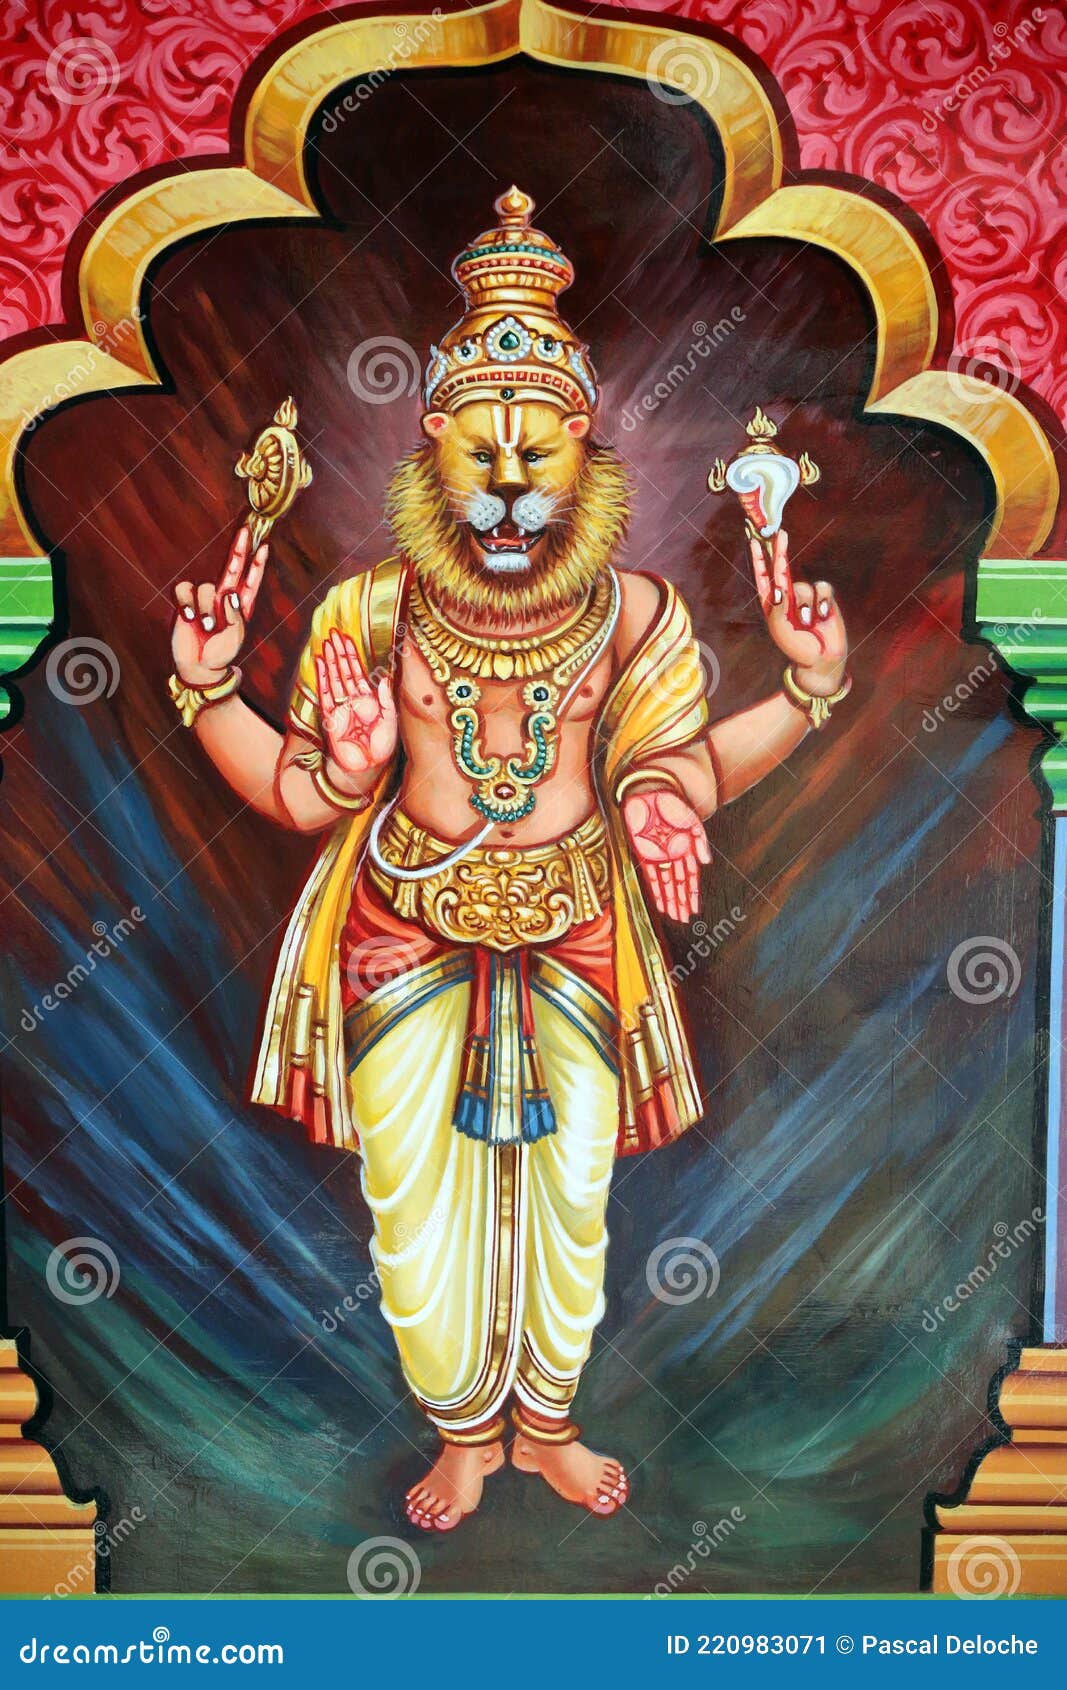 Ảnh đại diện của Vishnu trong đạo Hindu đã được tái hiện đầy chi tiết và sống động trong bức tranh này. Xem ảnh để khám phá tinh túy của văn hóa Hindu, từ những màu sắc tươi trẻ đến các yếu tố tâm linh sâu sắc. Sản phẩm này đã được cải tiến và cập nhật với công nghệ hiện đại để mang đến cho bạn một trải nghiệm truyền cảm hứng nhất.